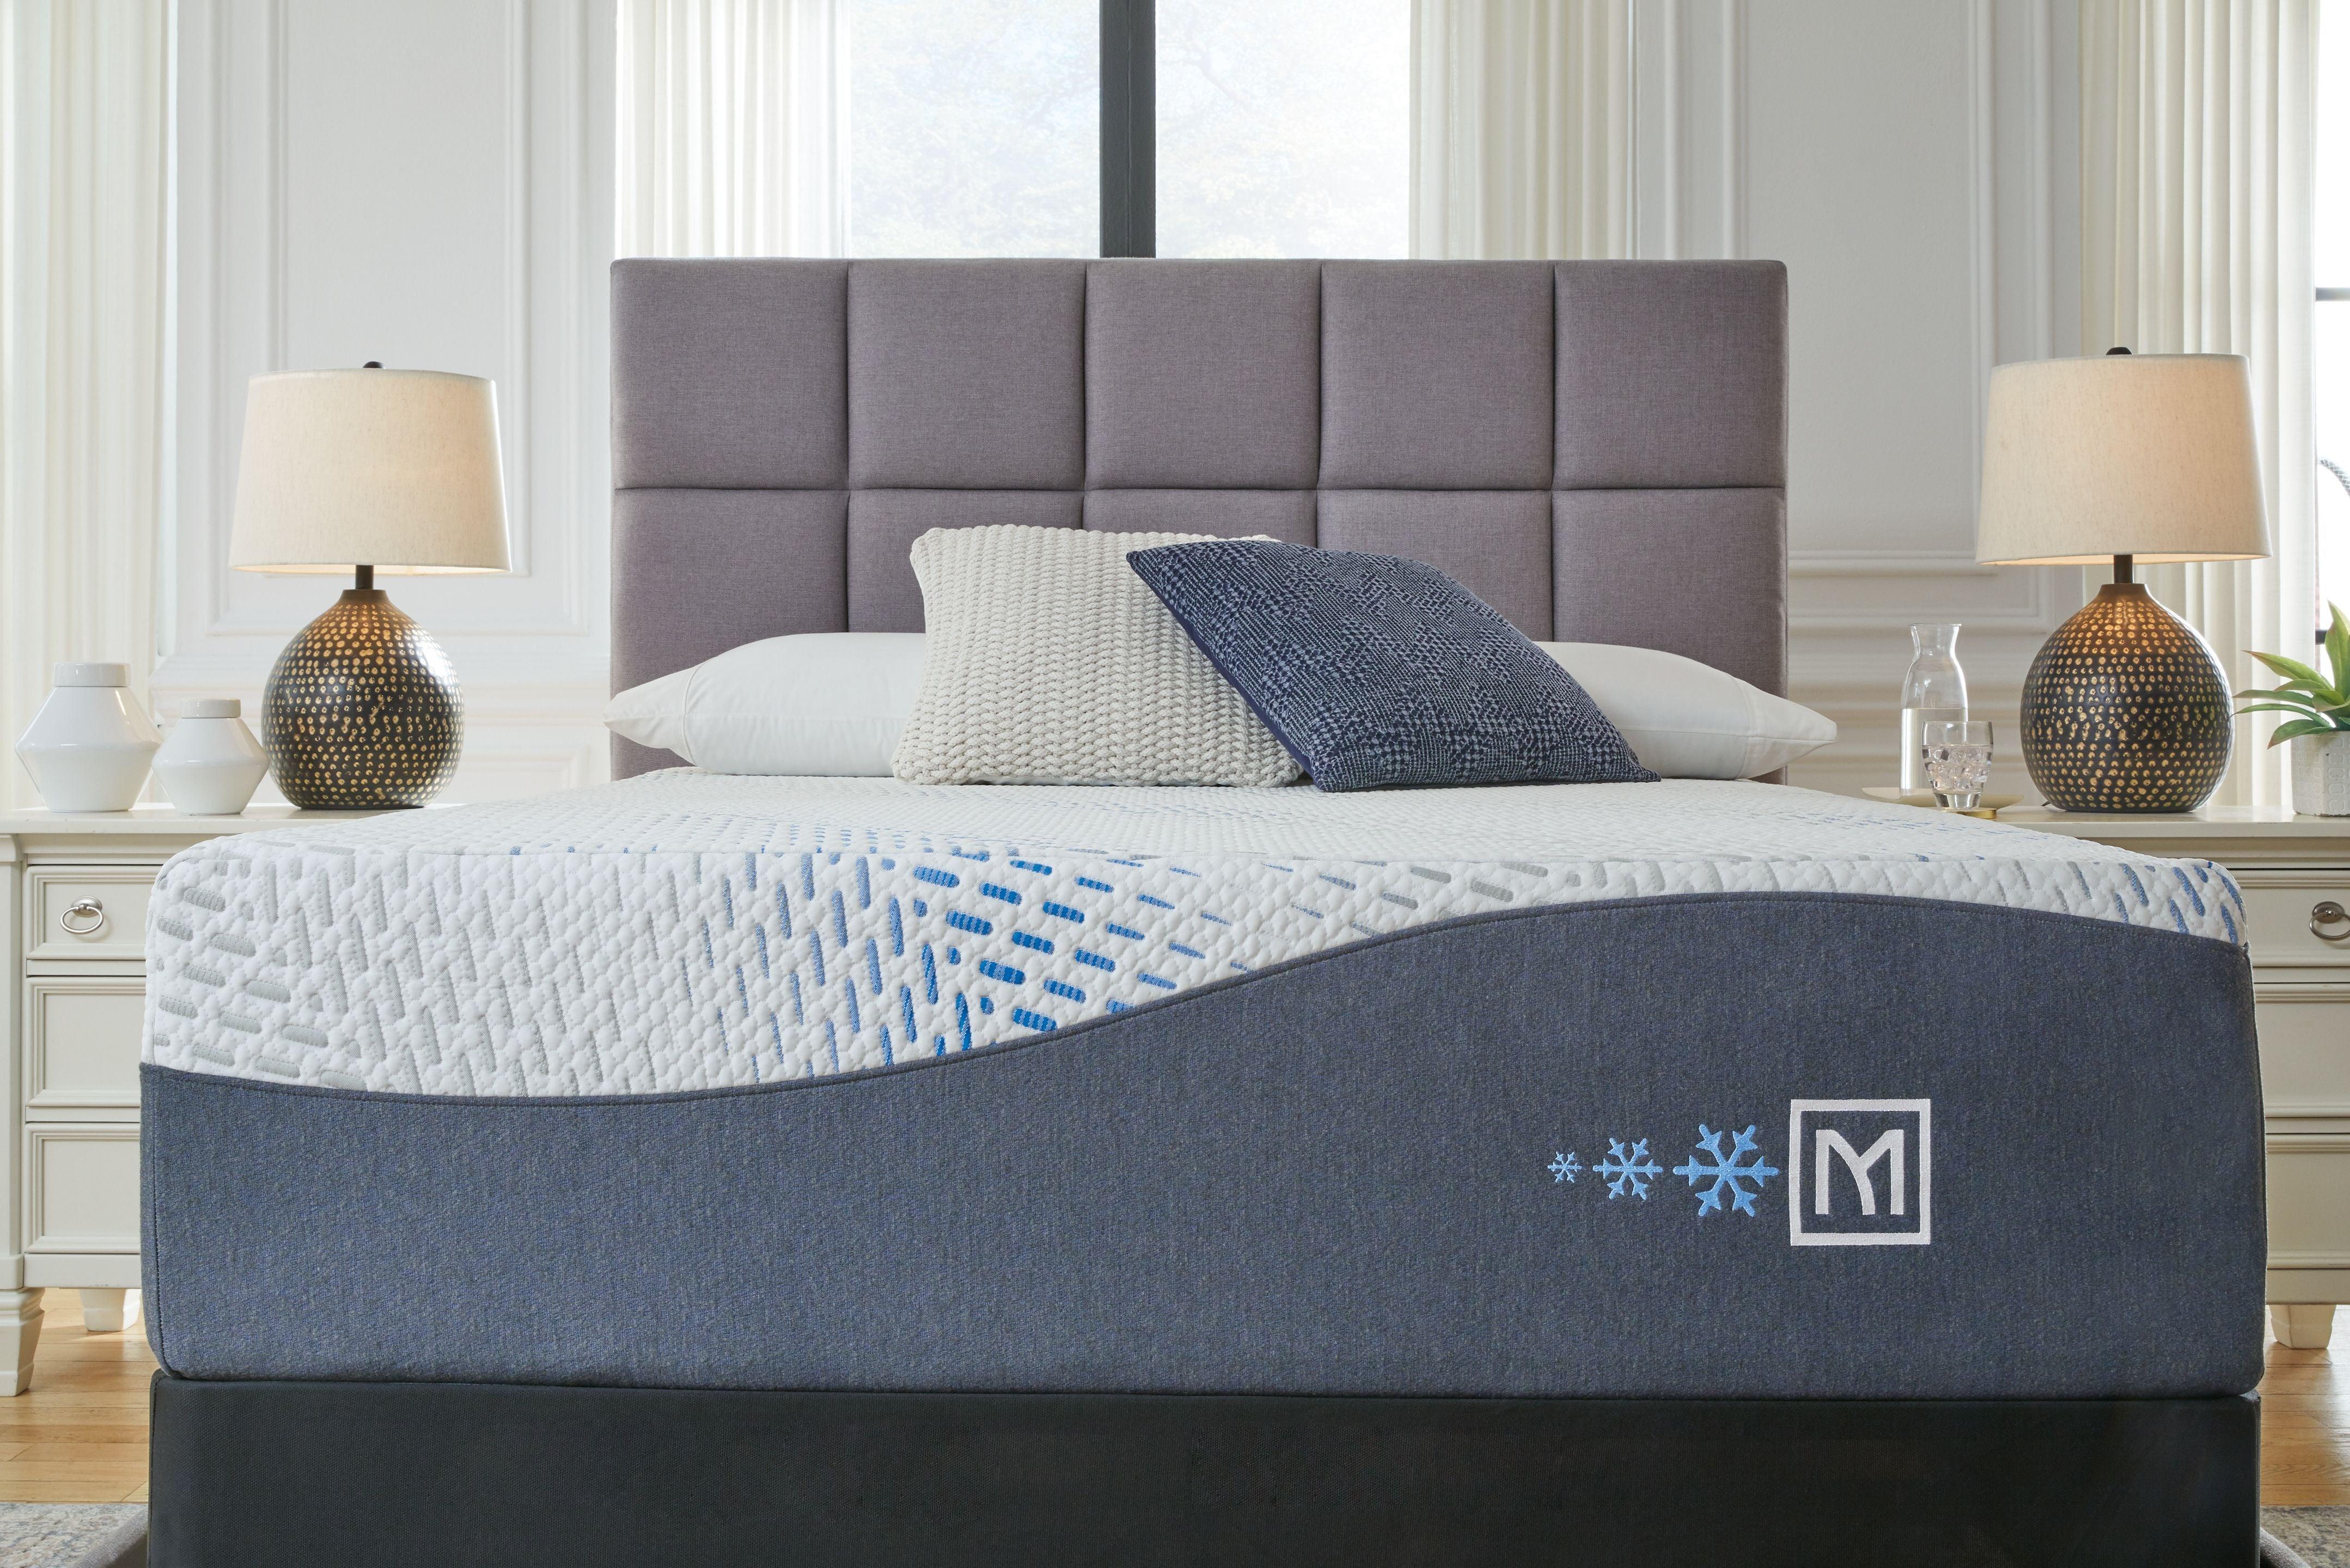 Sierra Sleep® by Ashley - Millennium - Cushion Firm Gel Hybrid Mattress, Foundation - 5th Avenue Furniture